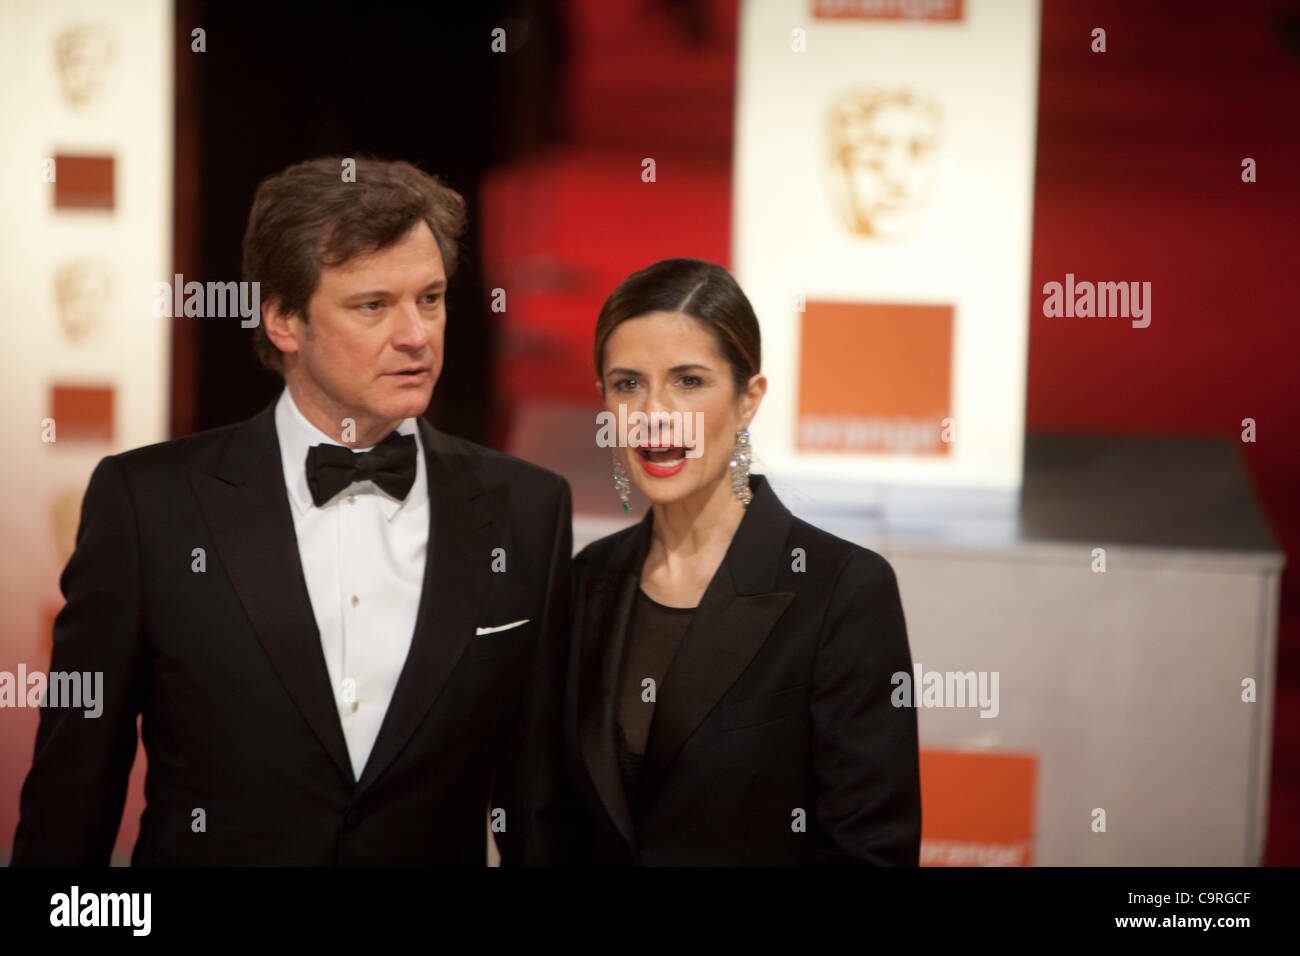 Londra, UK, 12/02/2012. Attore, Colin Firth con sua moglie, Italiano produttore di film Livia Giuggiol, sul tappeto rosso per assistere al 2012 BAFTAs Foto Stock